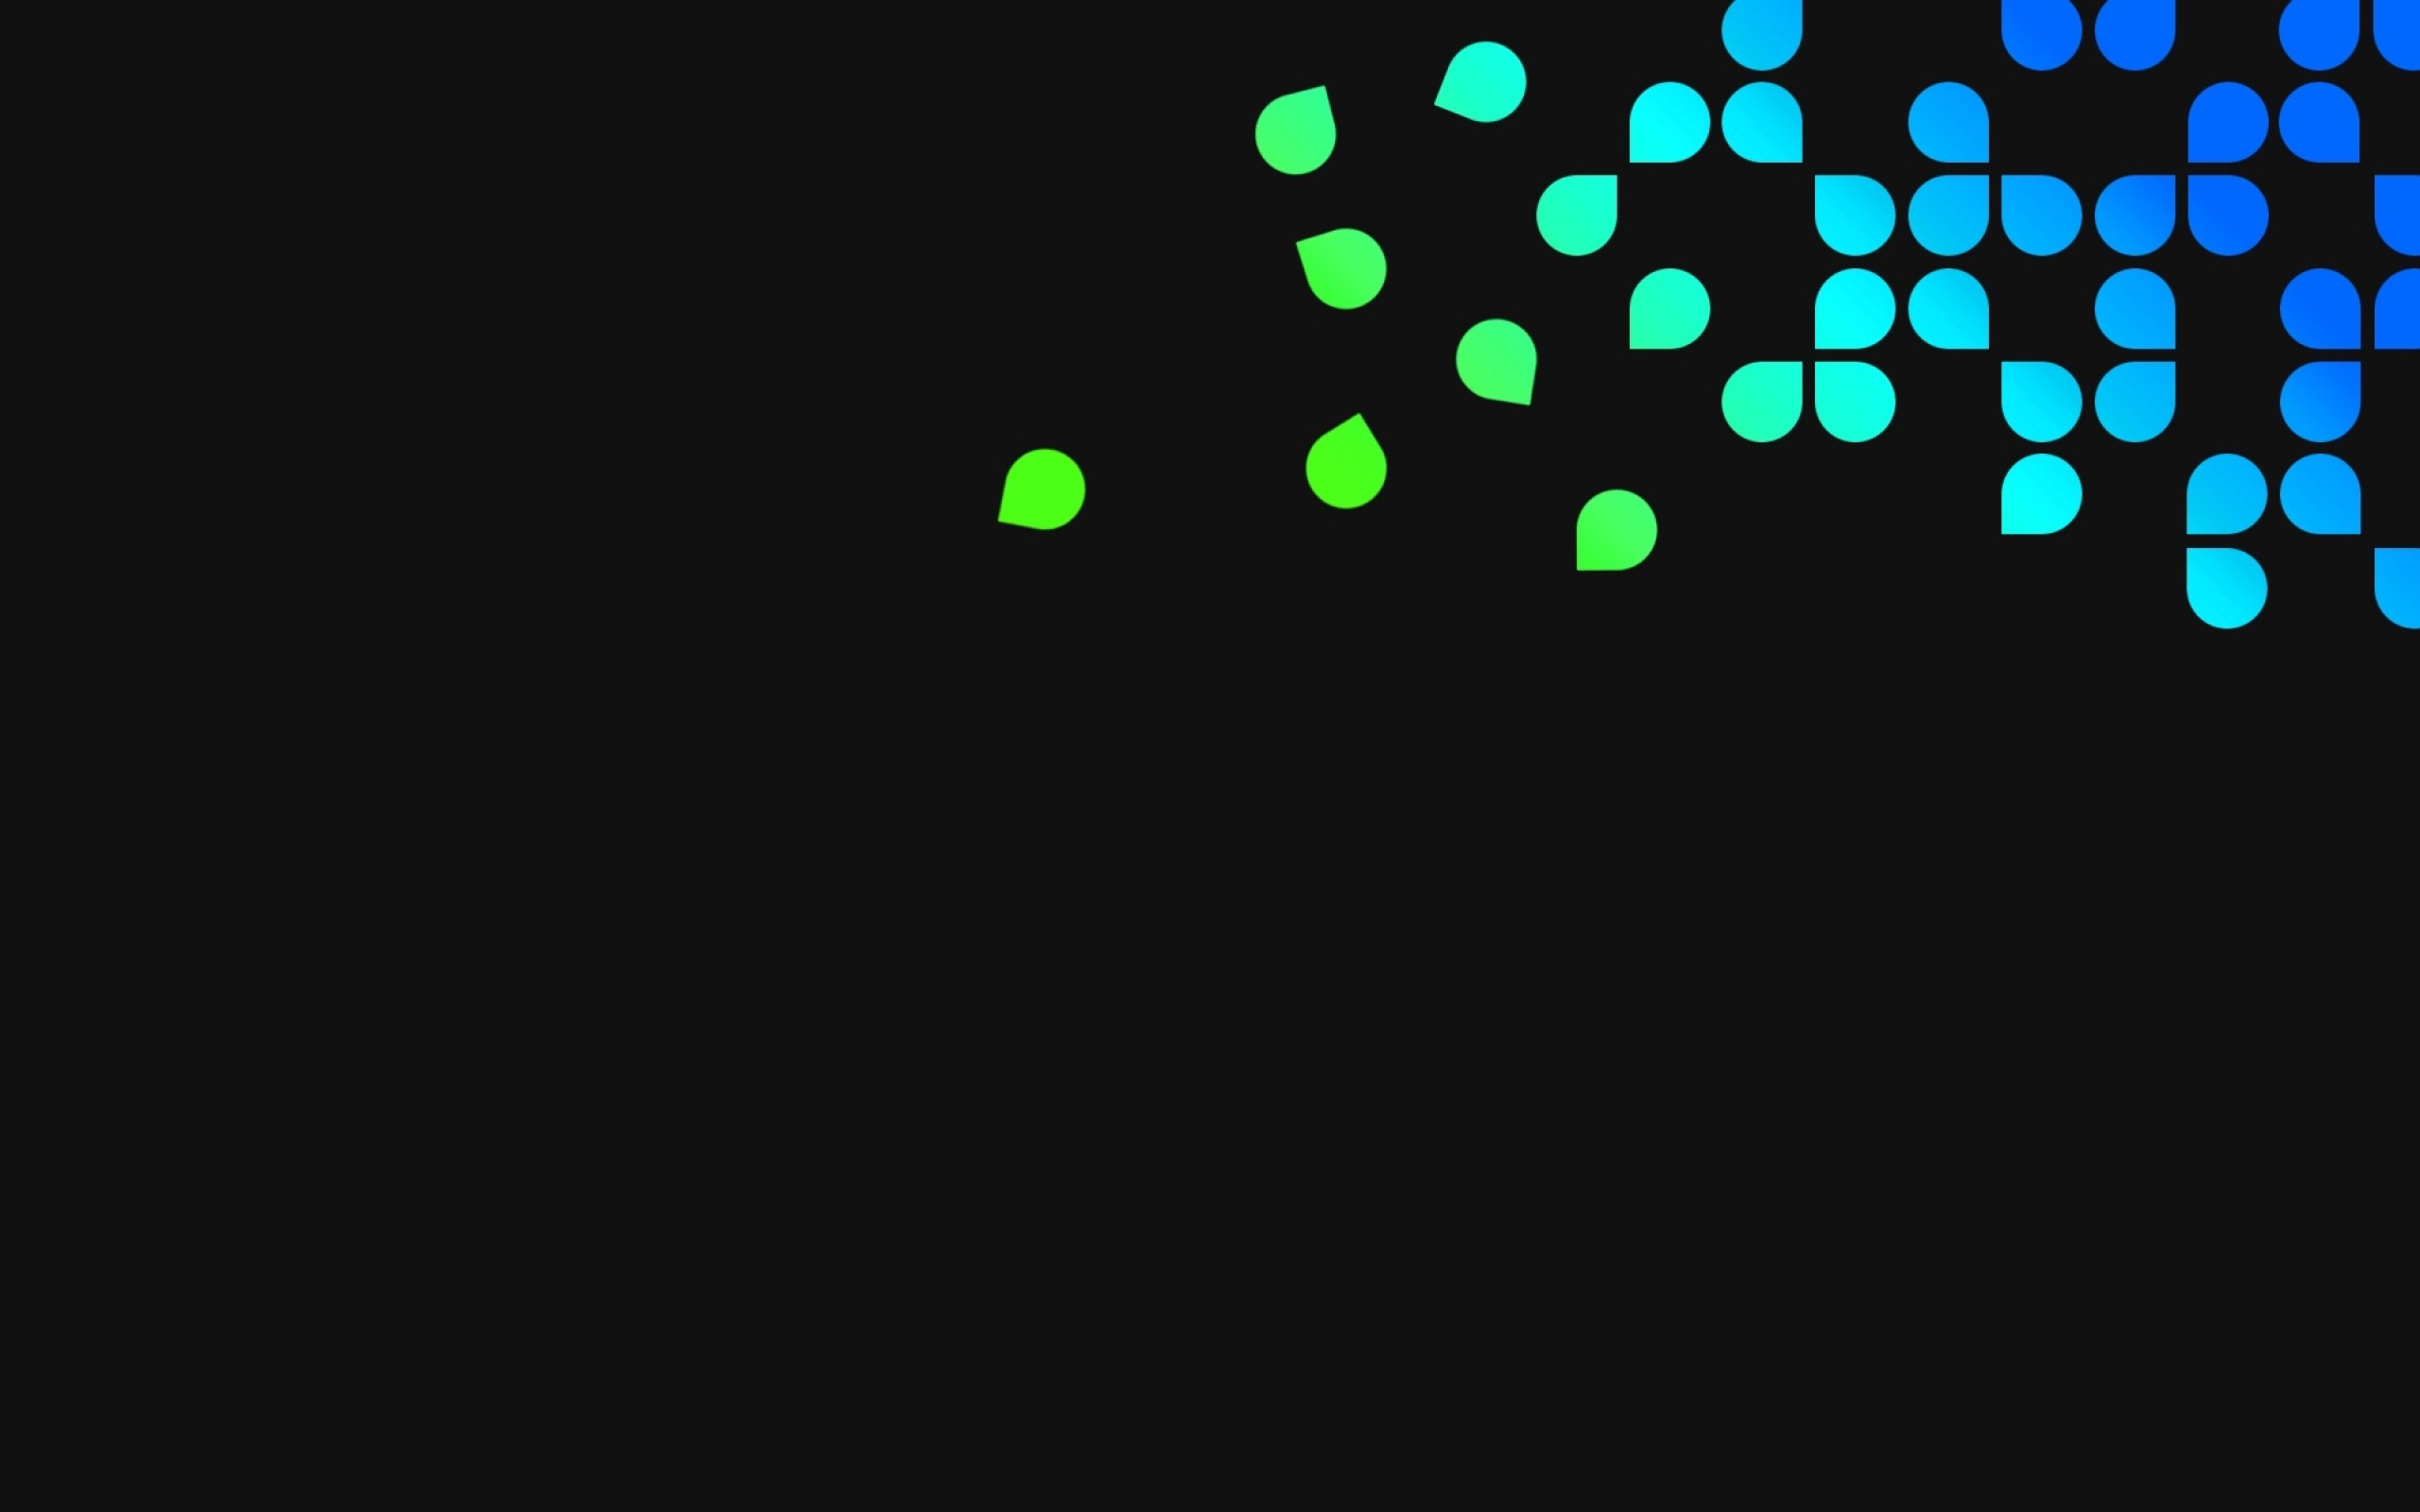 2560x1600  Wallpaper blue, green, black, dots, circles